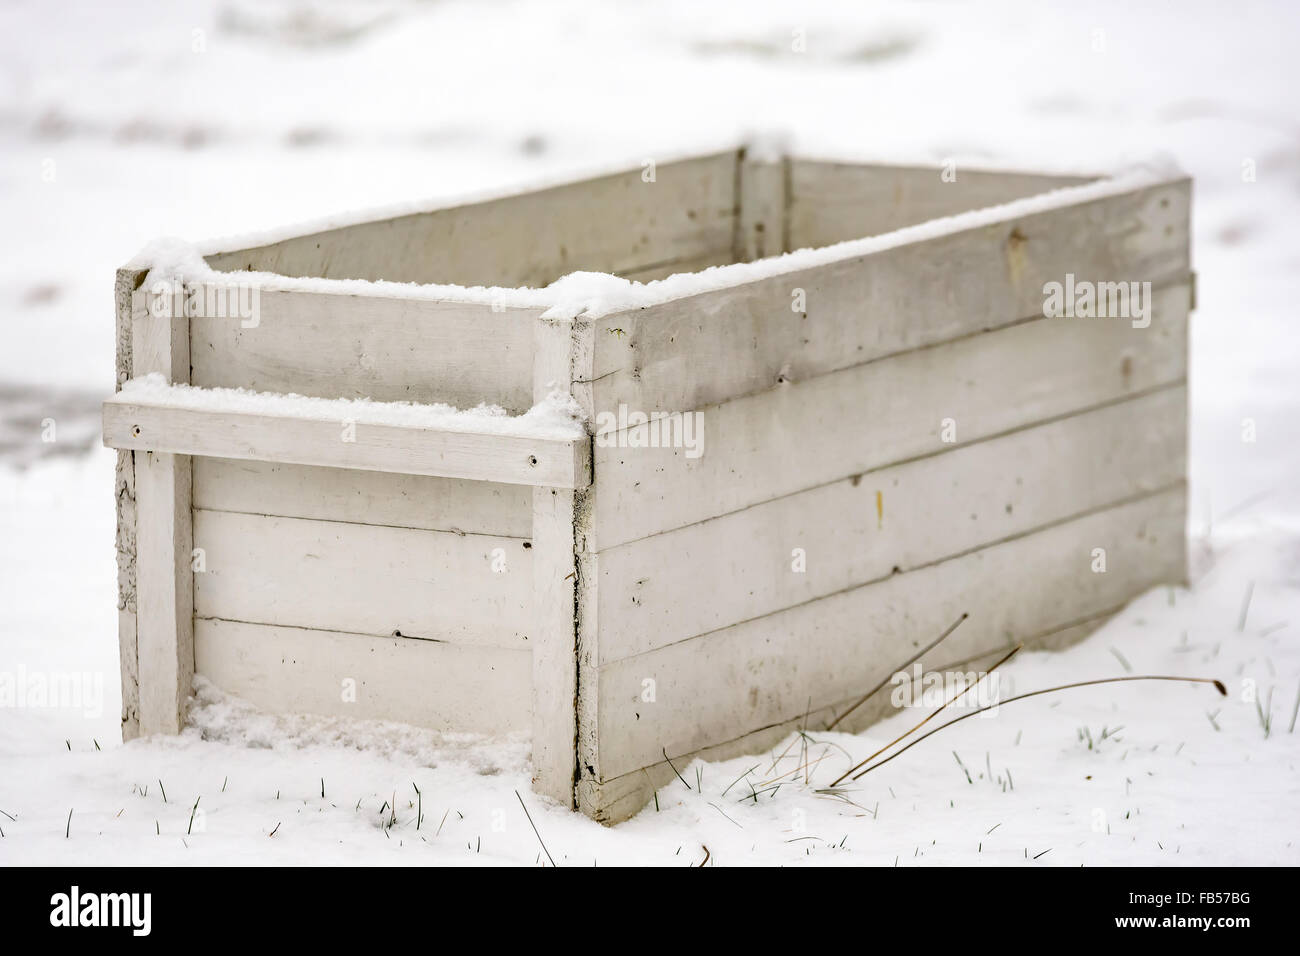 Eine weiße offene Holzkiste stehen im Schnee. Flachen Fokus auf vorderen Ecke. Stockfoto